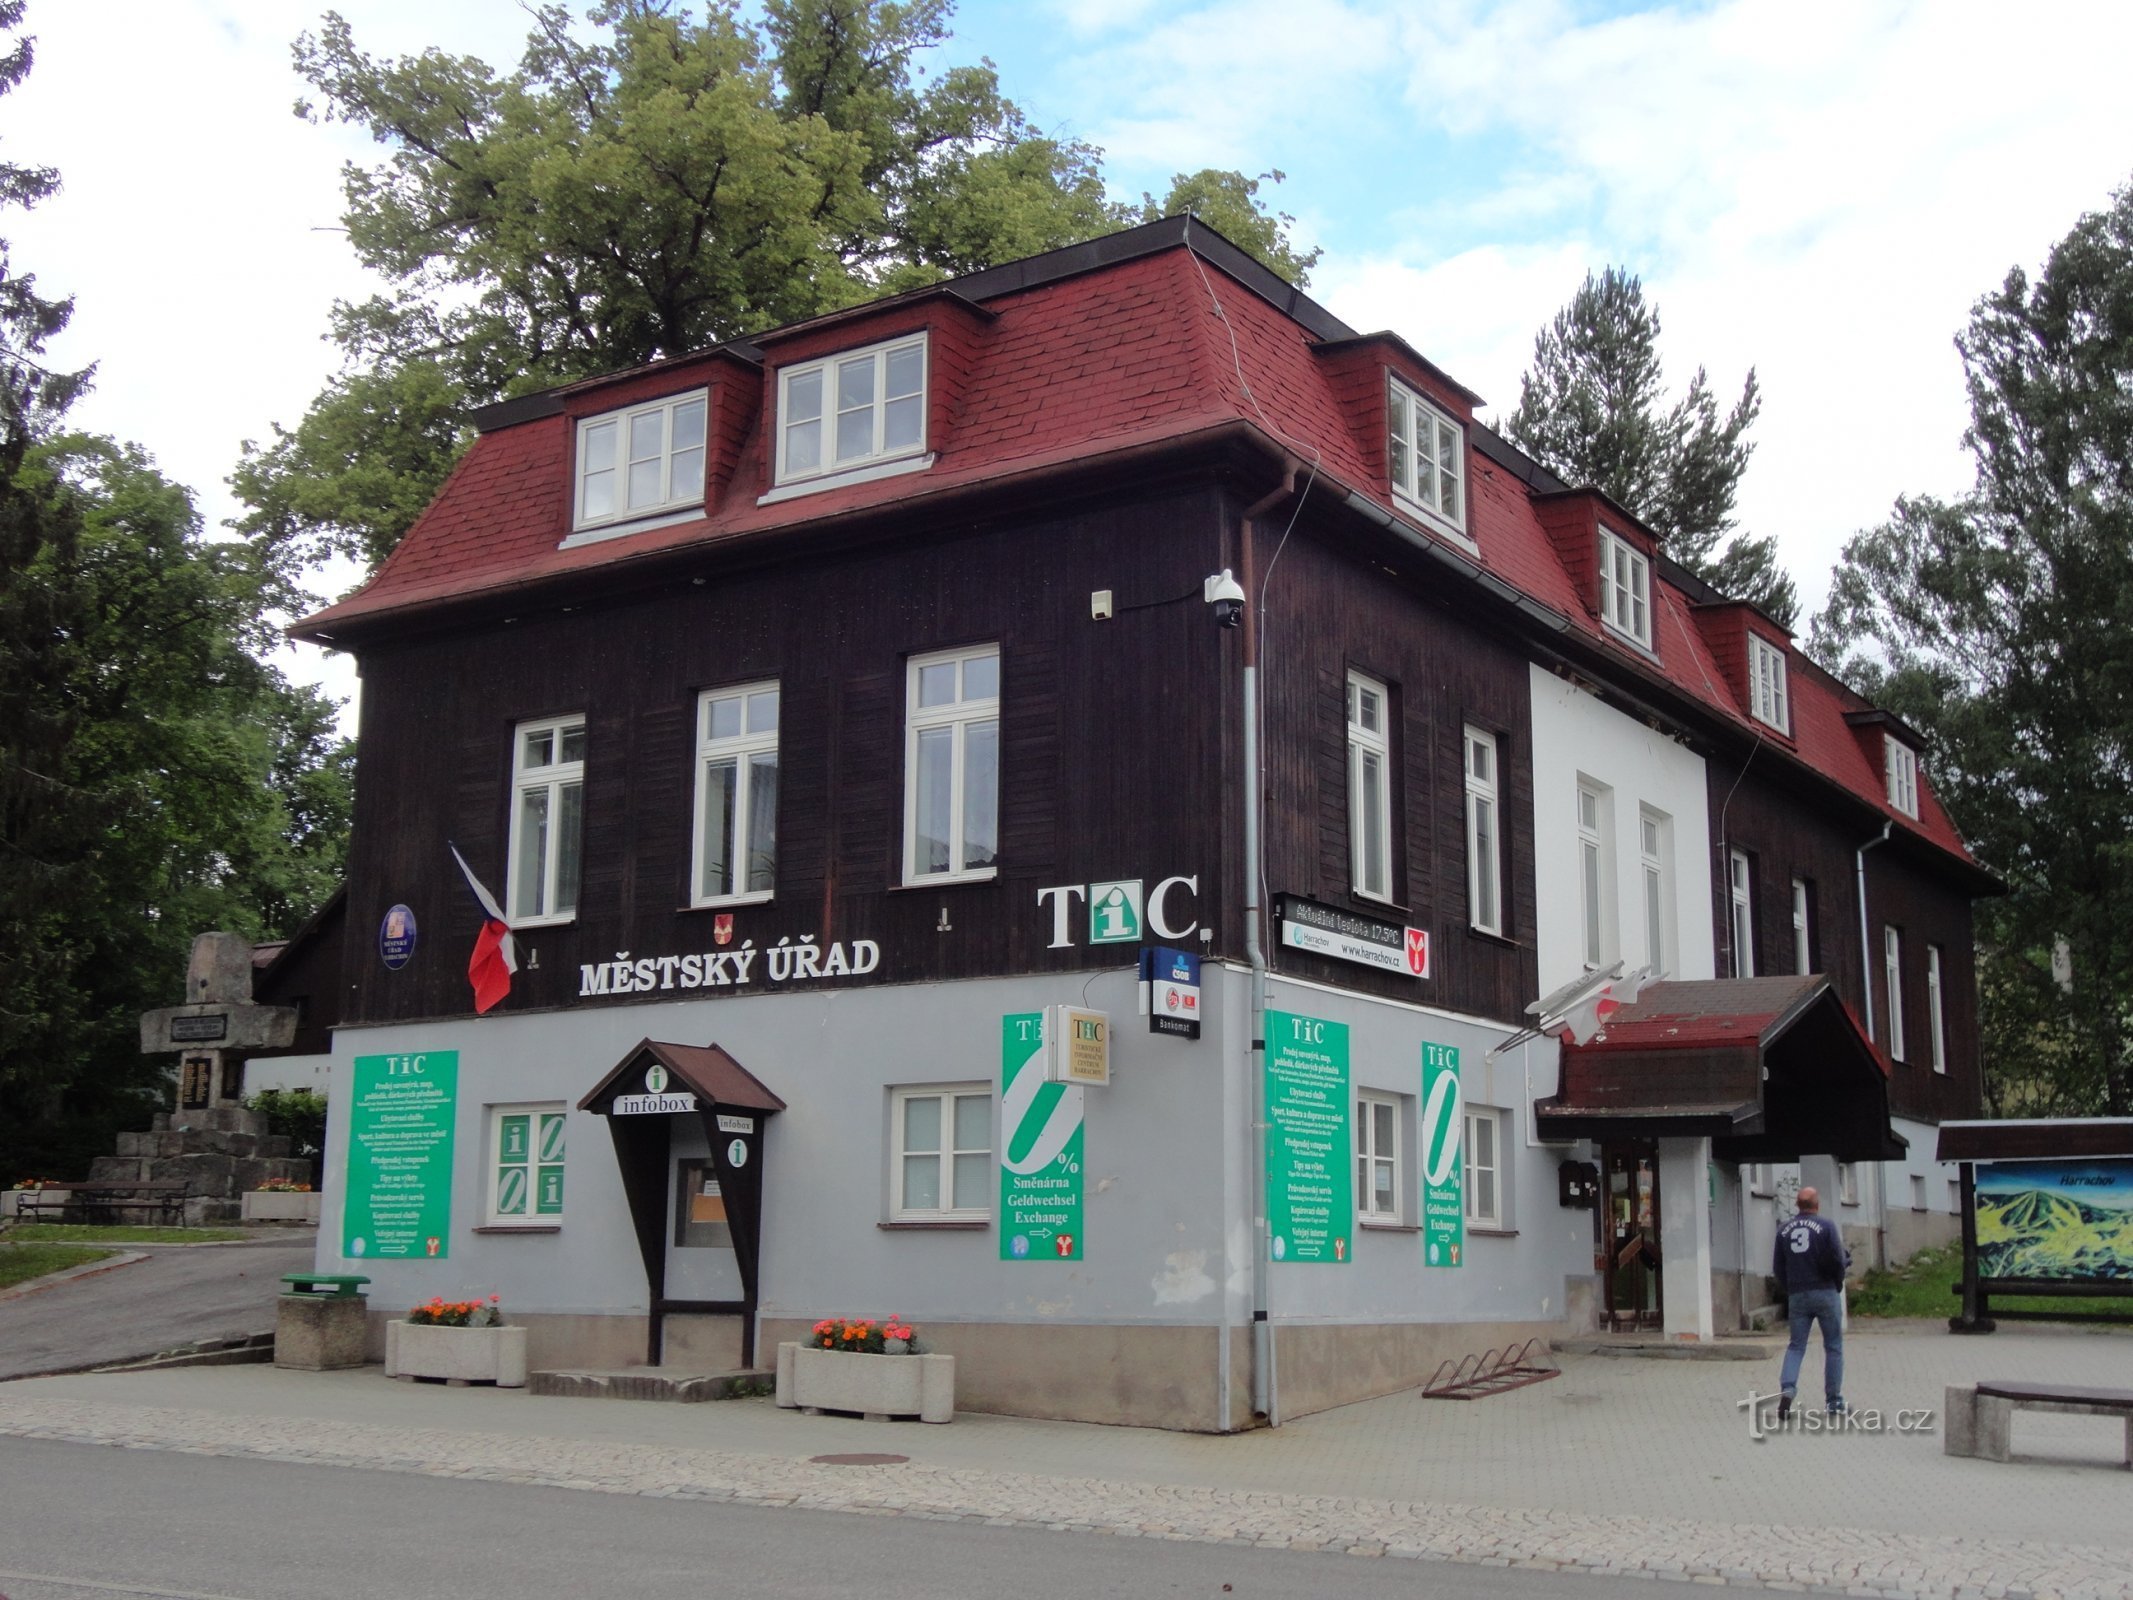 Harrachov - Tourist information center